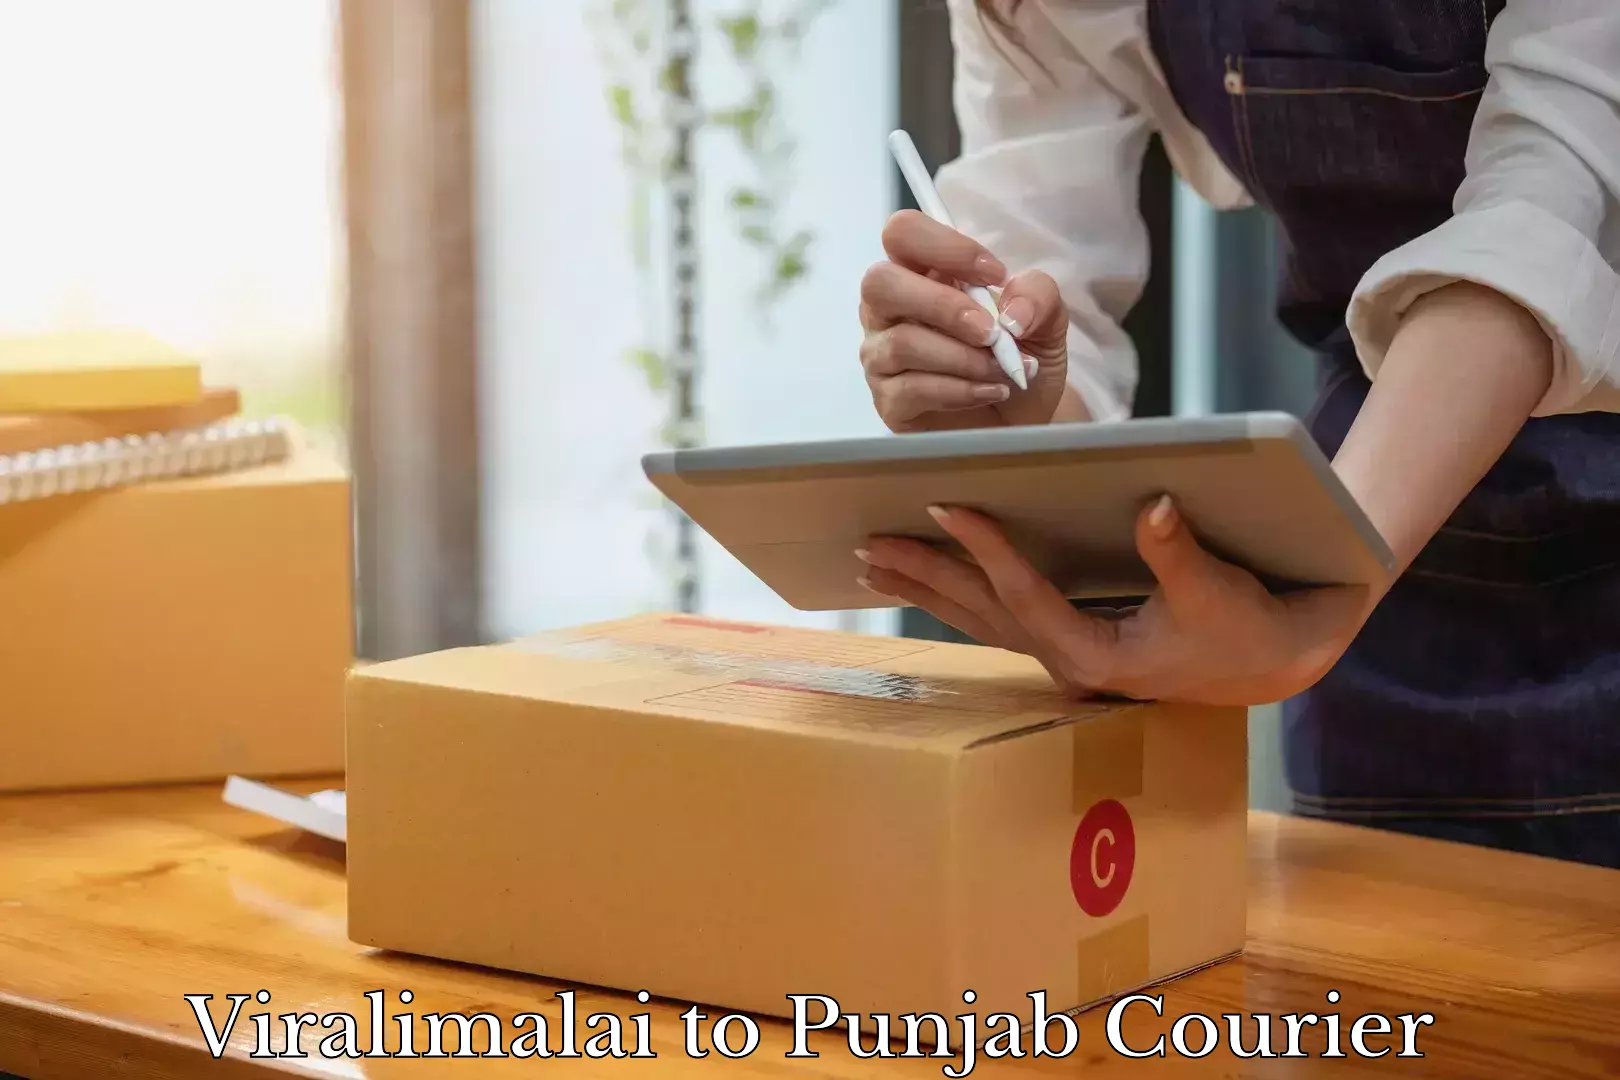 Luggage delivery estimate Viralimalai to Punjab